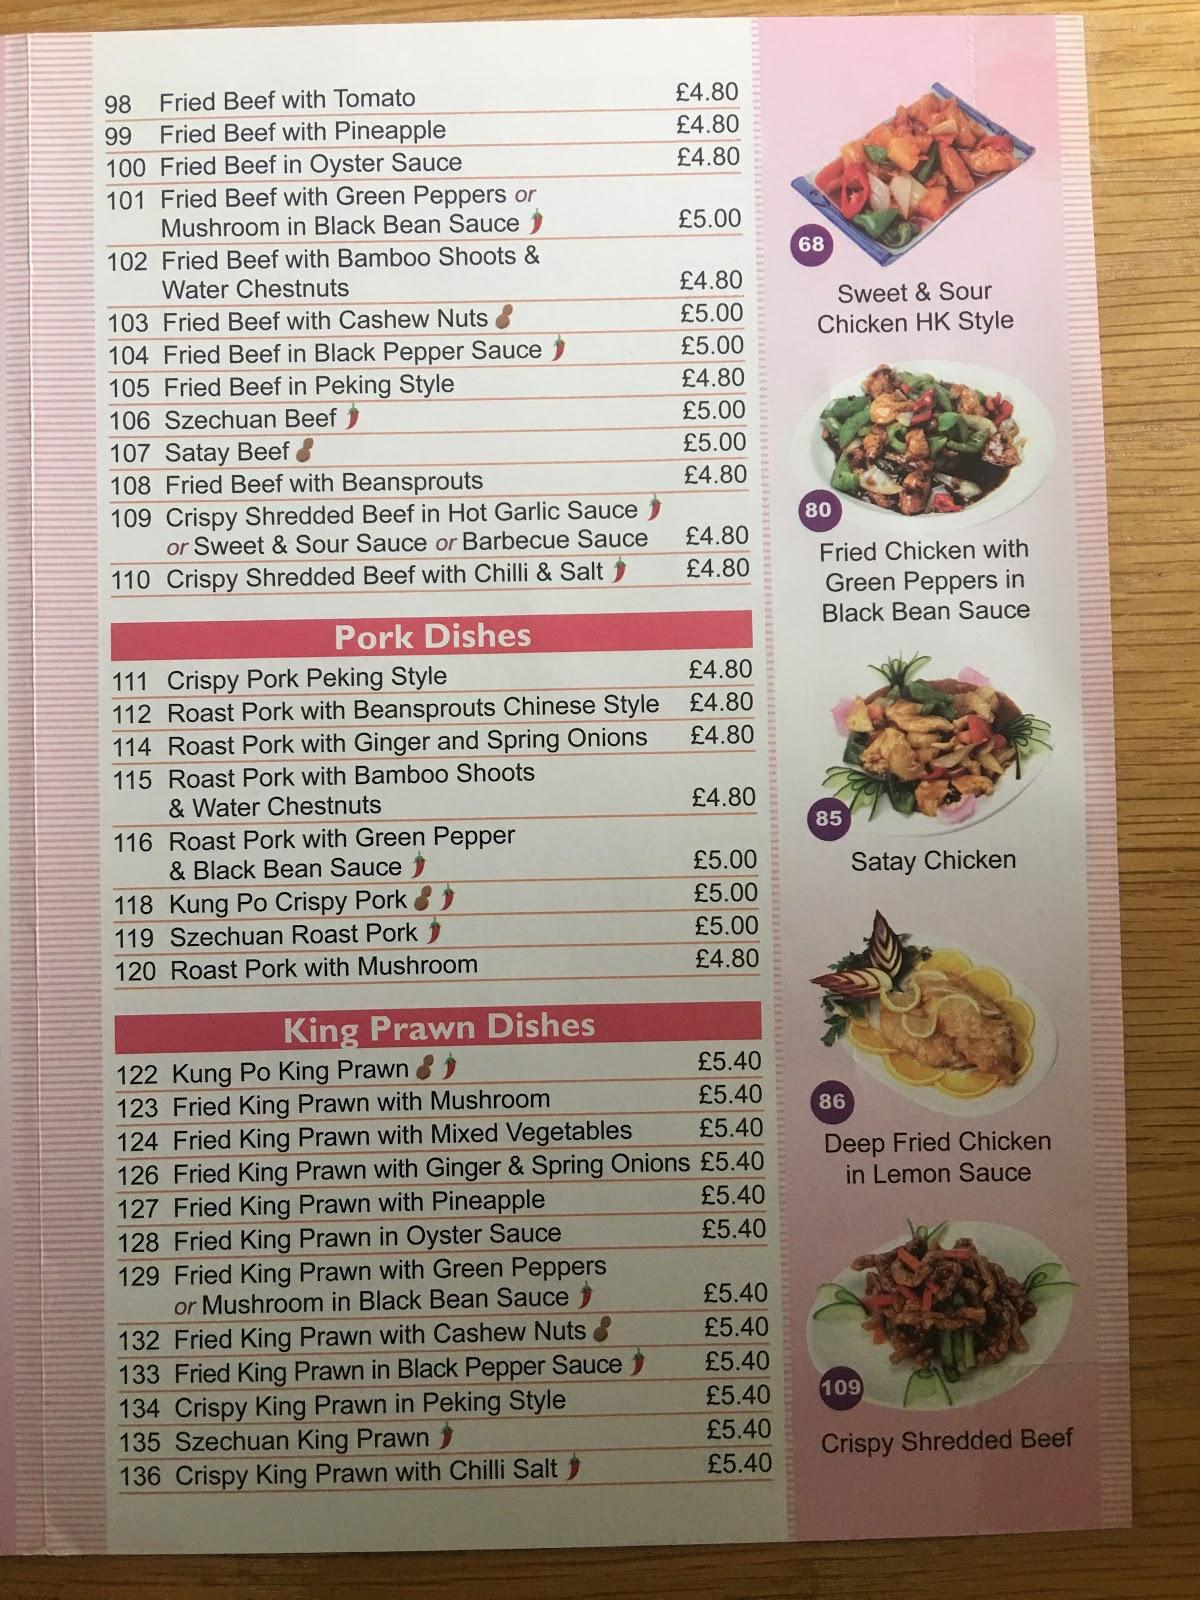 panda lin menu